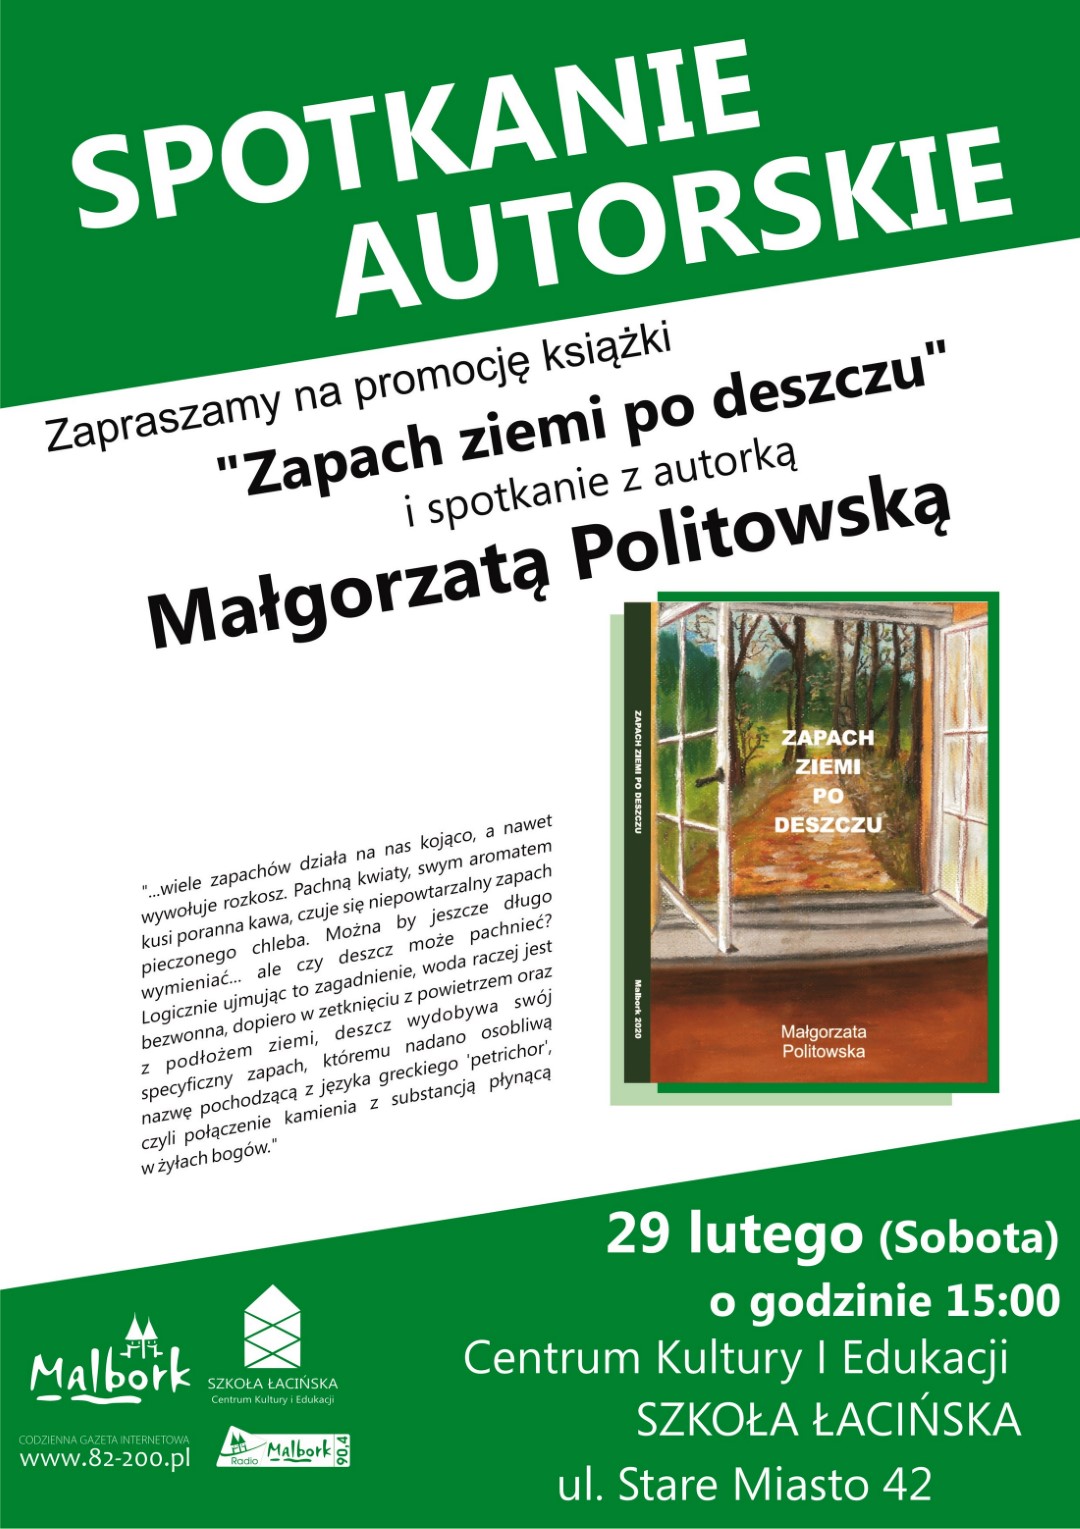 http://m.82-200.pl/2020/02/orig/politowska-plakat-krzywe-5498.jpg